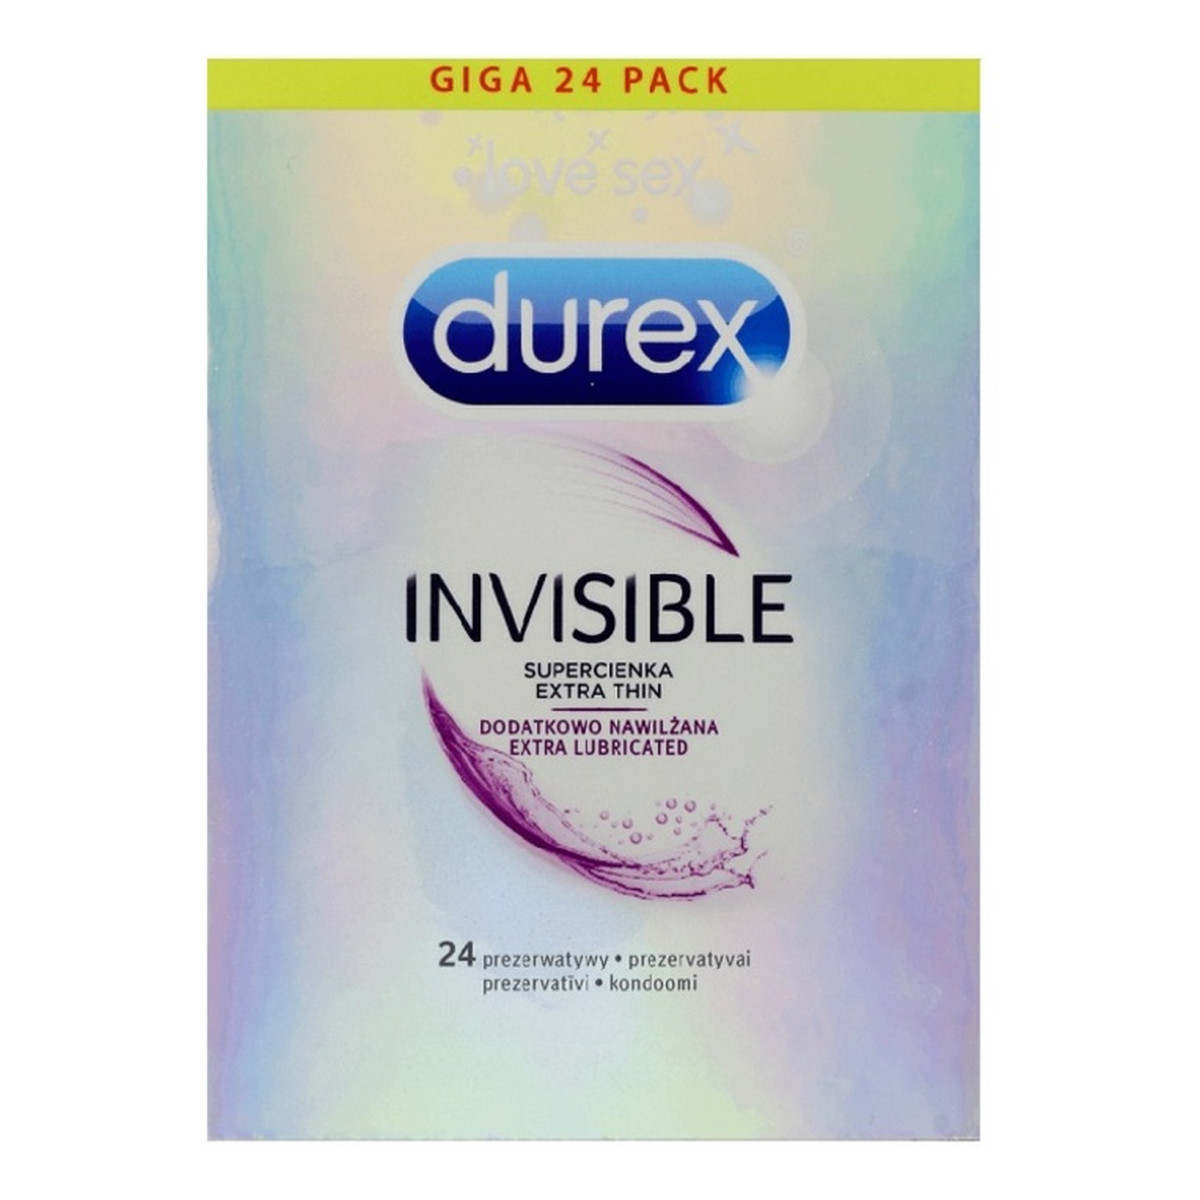 Durex Invisible Extra Thin Extra Lubricated super cienkie prezerwatywy dodatkowo nawilżane 24szt